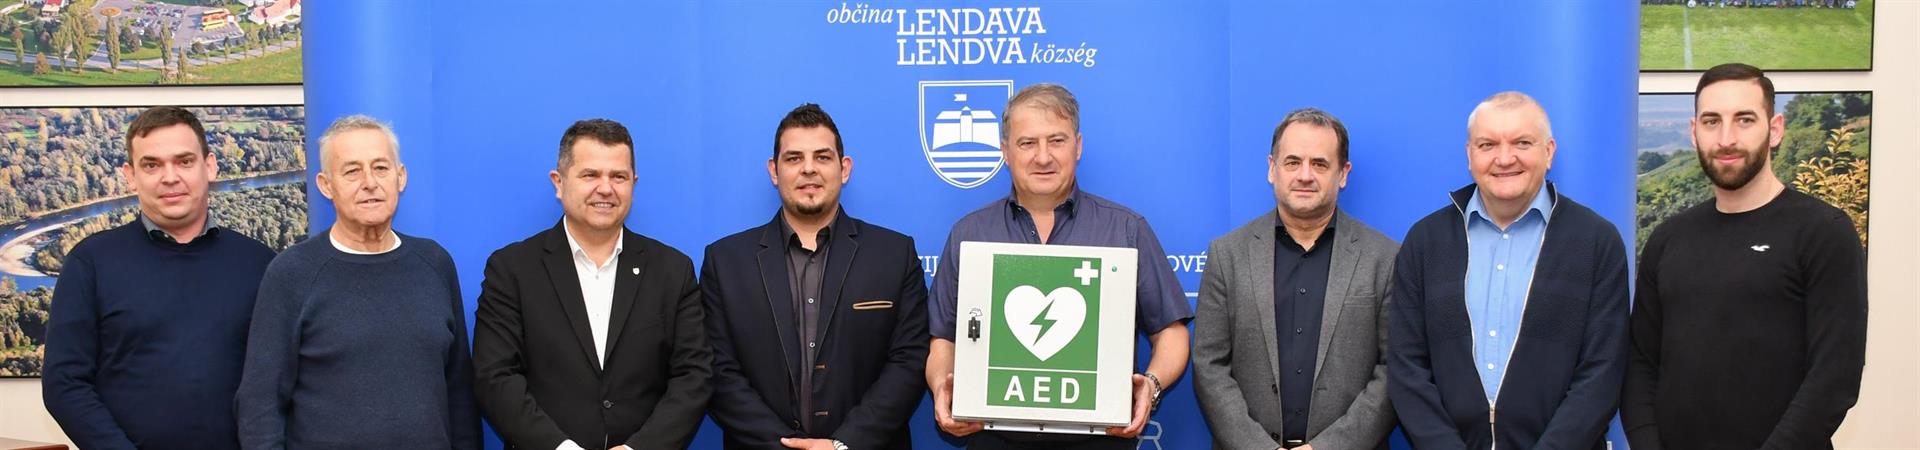 Občina Lendava predala defibrilatorje za večjo varnost v občini